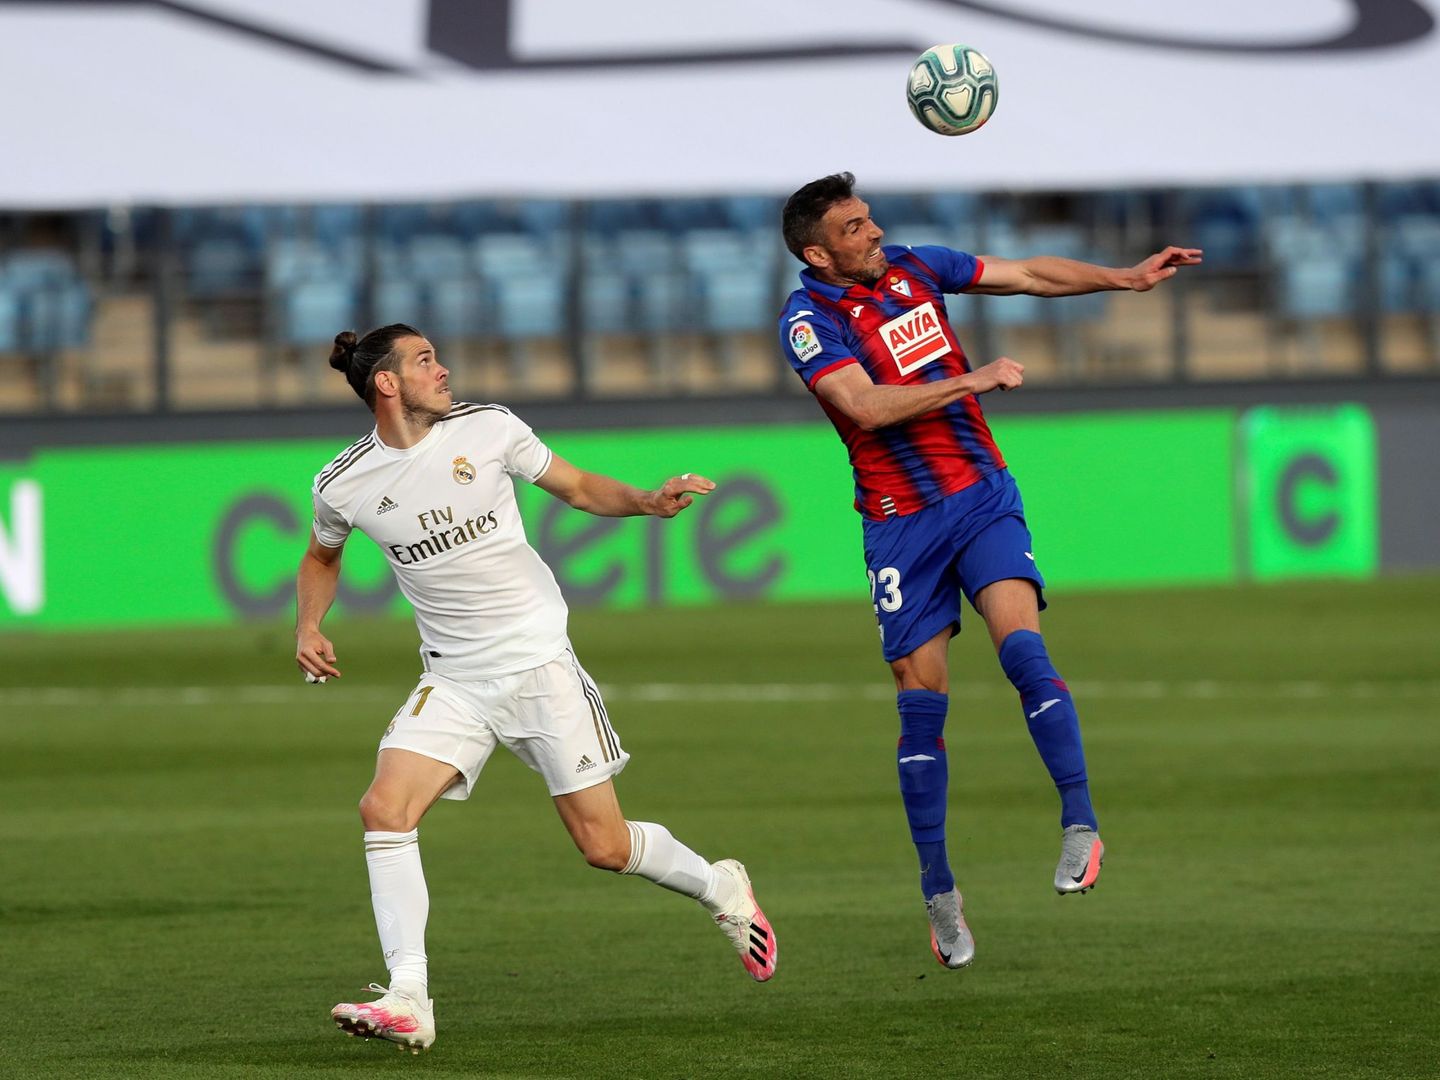 Bale no llega a un balón en una acción del partido contra el Eibar. (Efe)